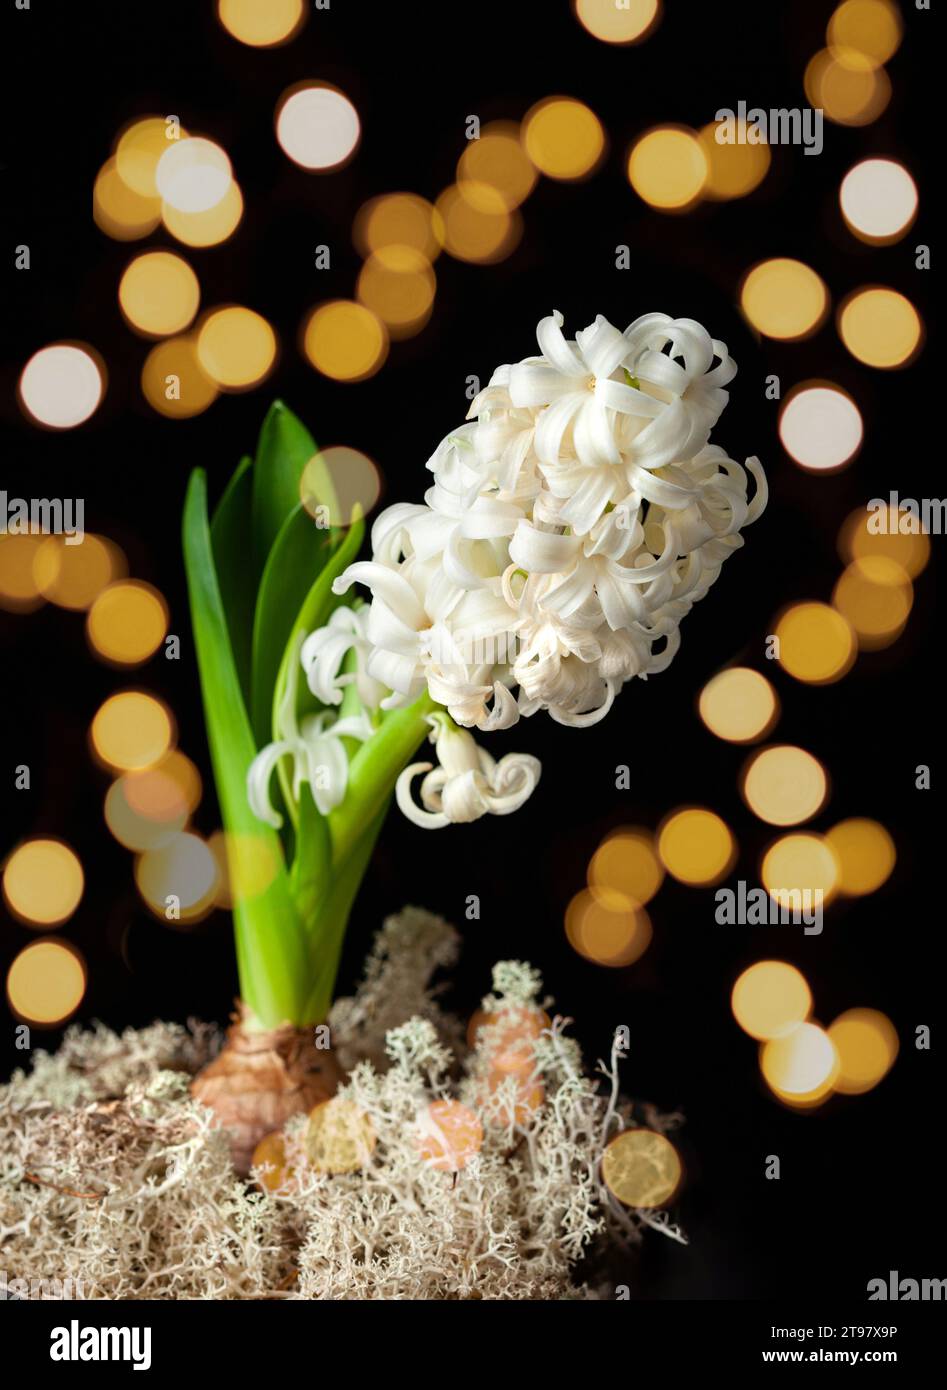 jacinthe blanche traditionnelle de noël d'hiver ou fleur de printemps sur fond noir Banque D'Images